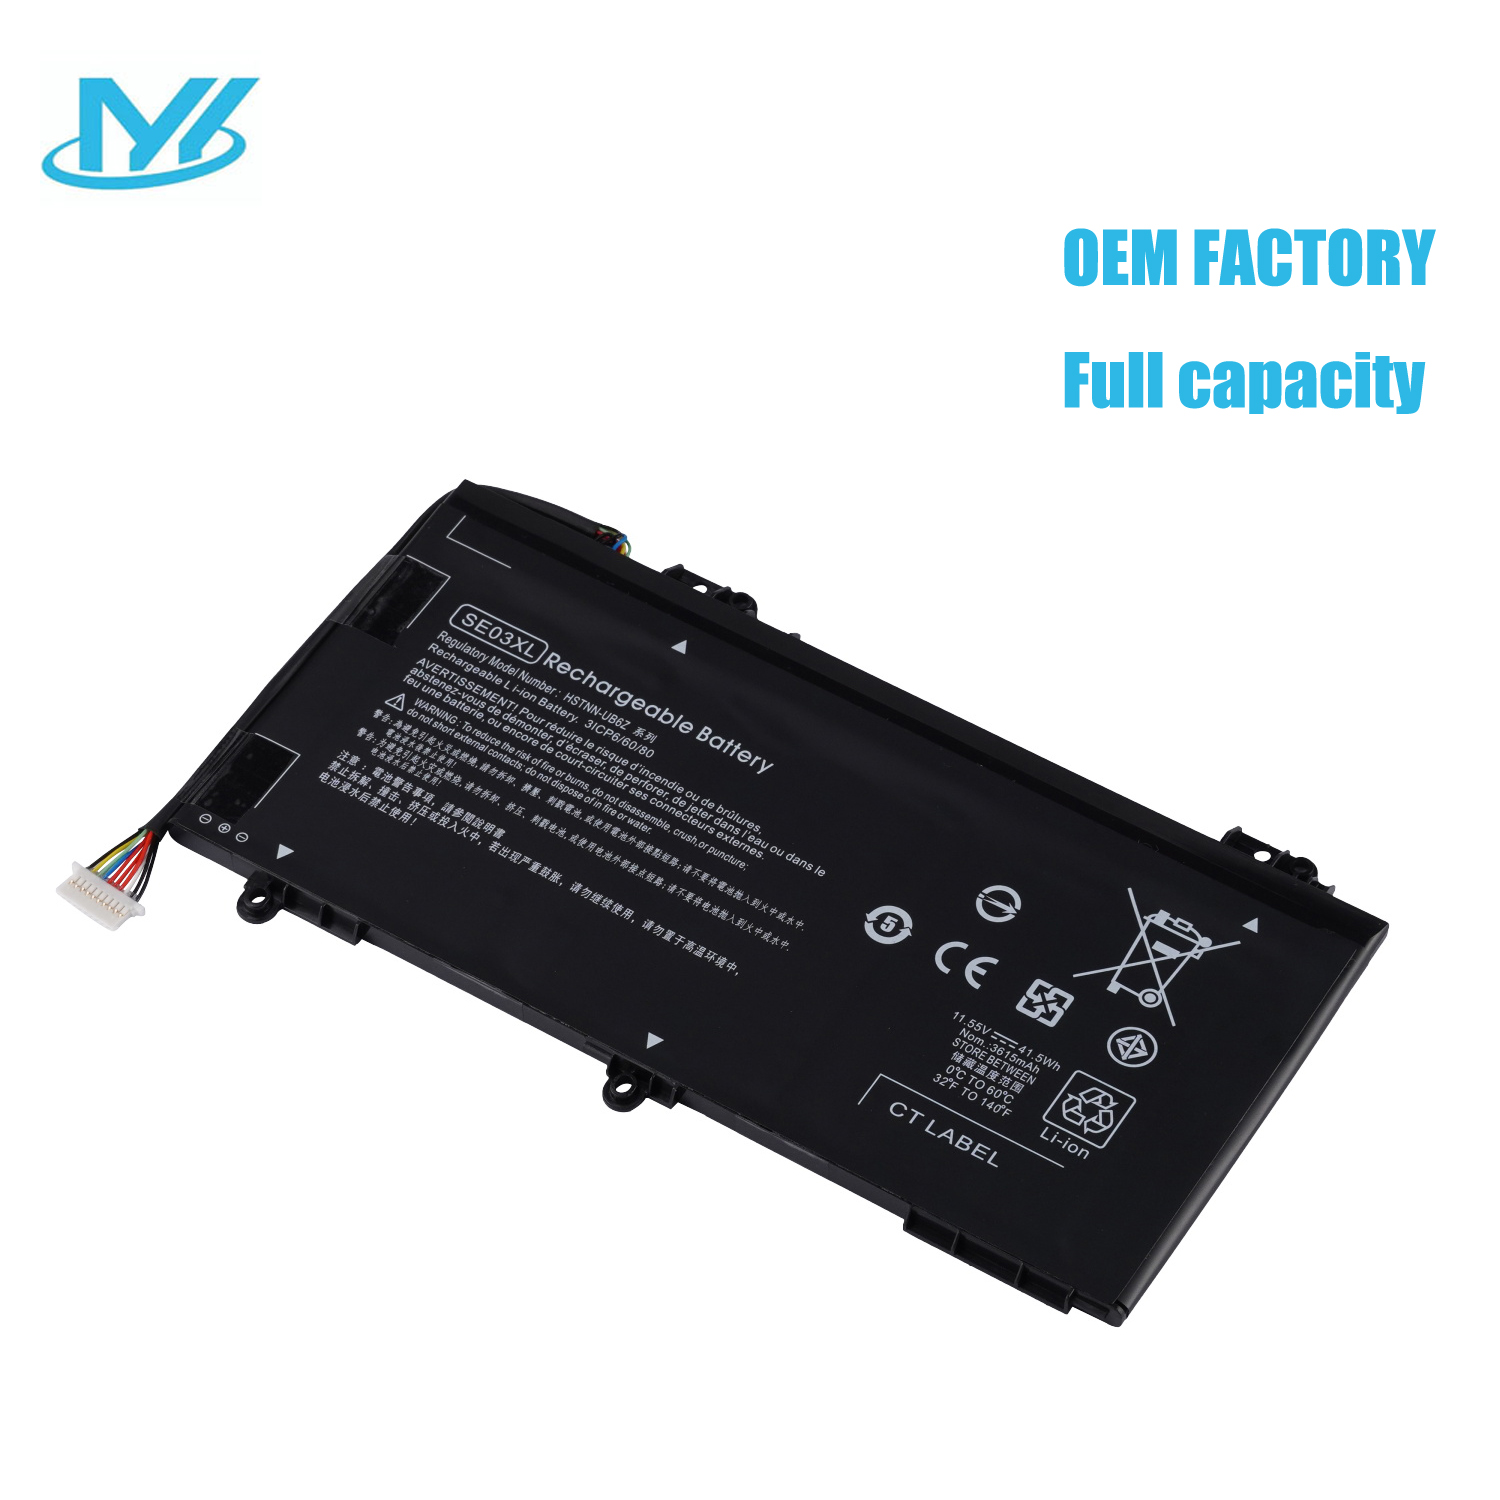 SE03XL rechargeable lithium ion Notebook battery Laptop battery For HP Pavilion 14-al000 14-AL100 14-AL124TX 14-AL028TX